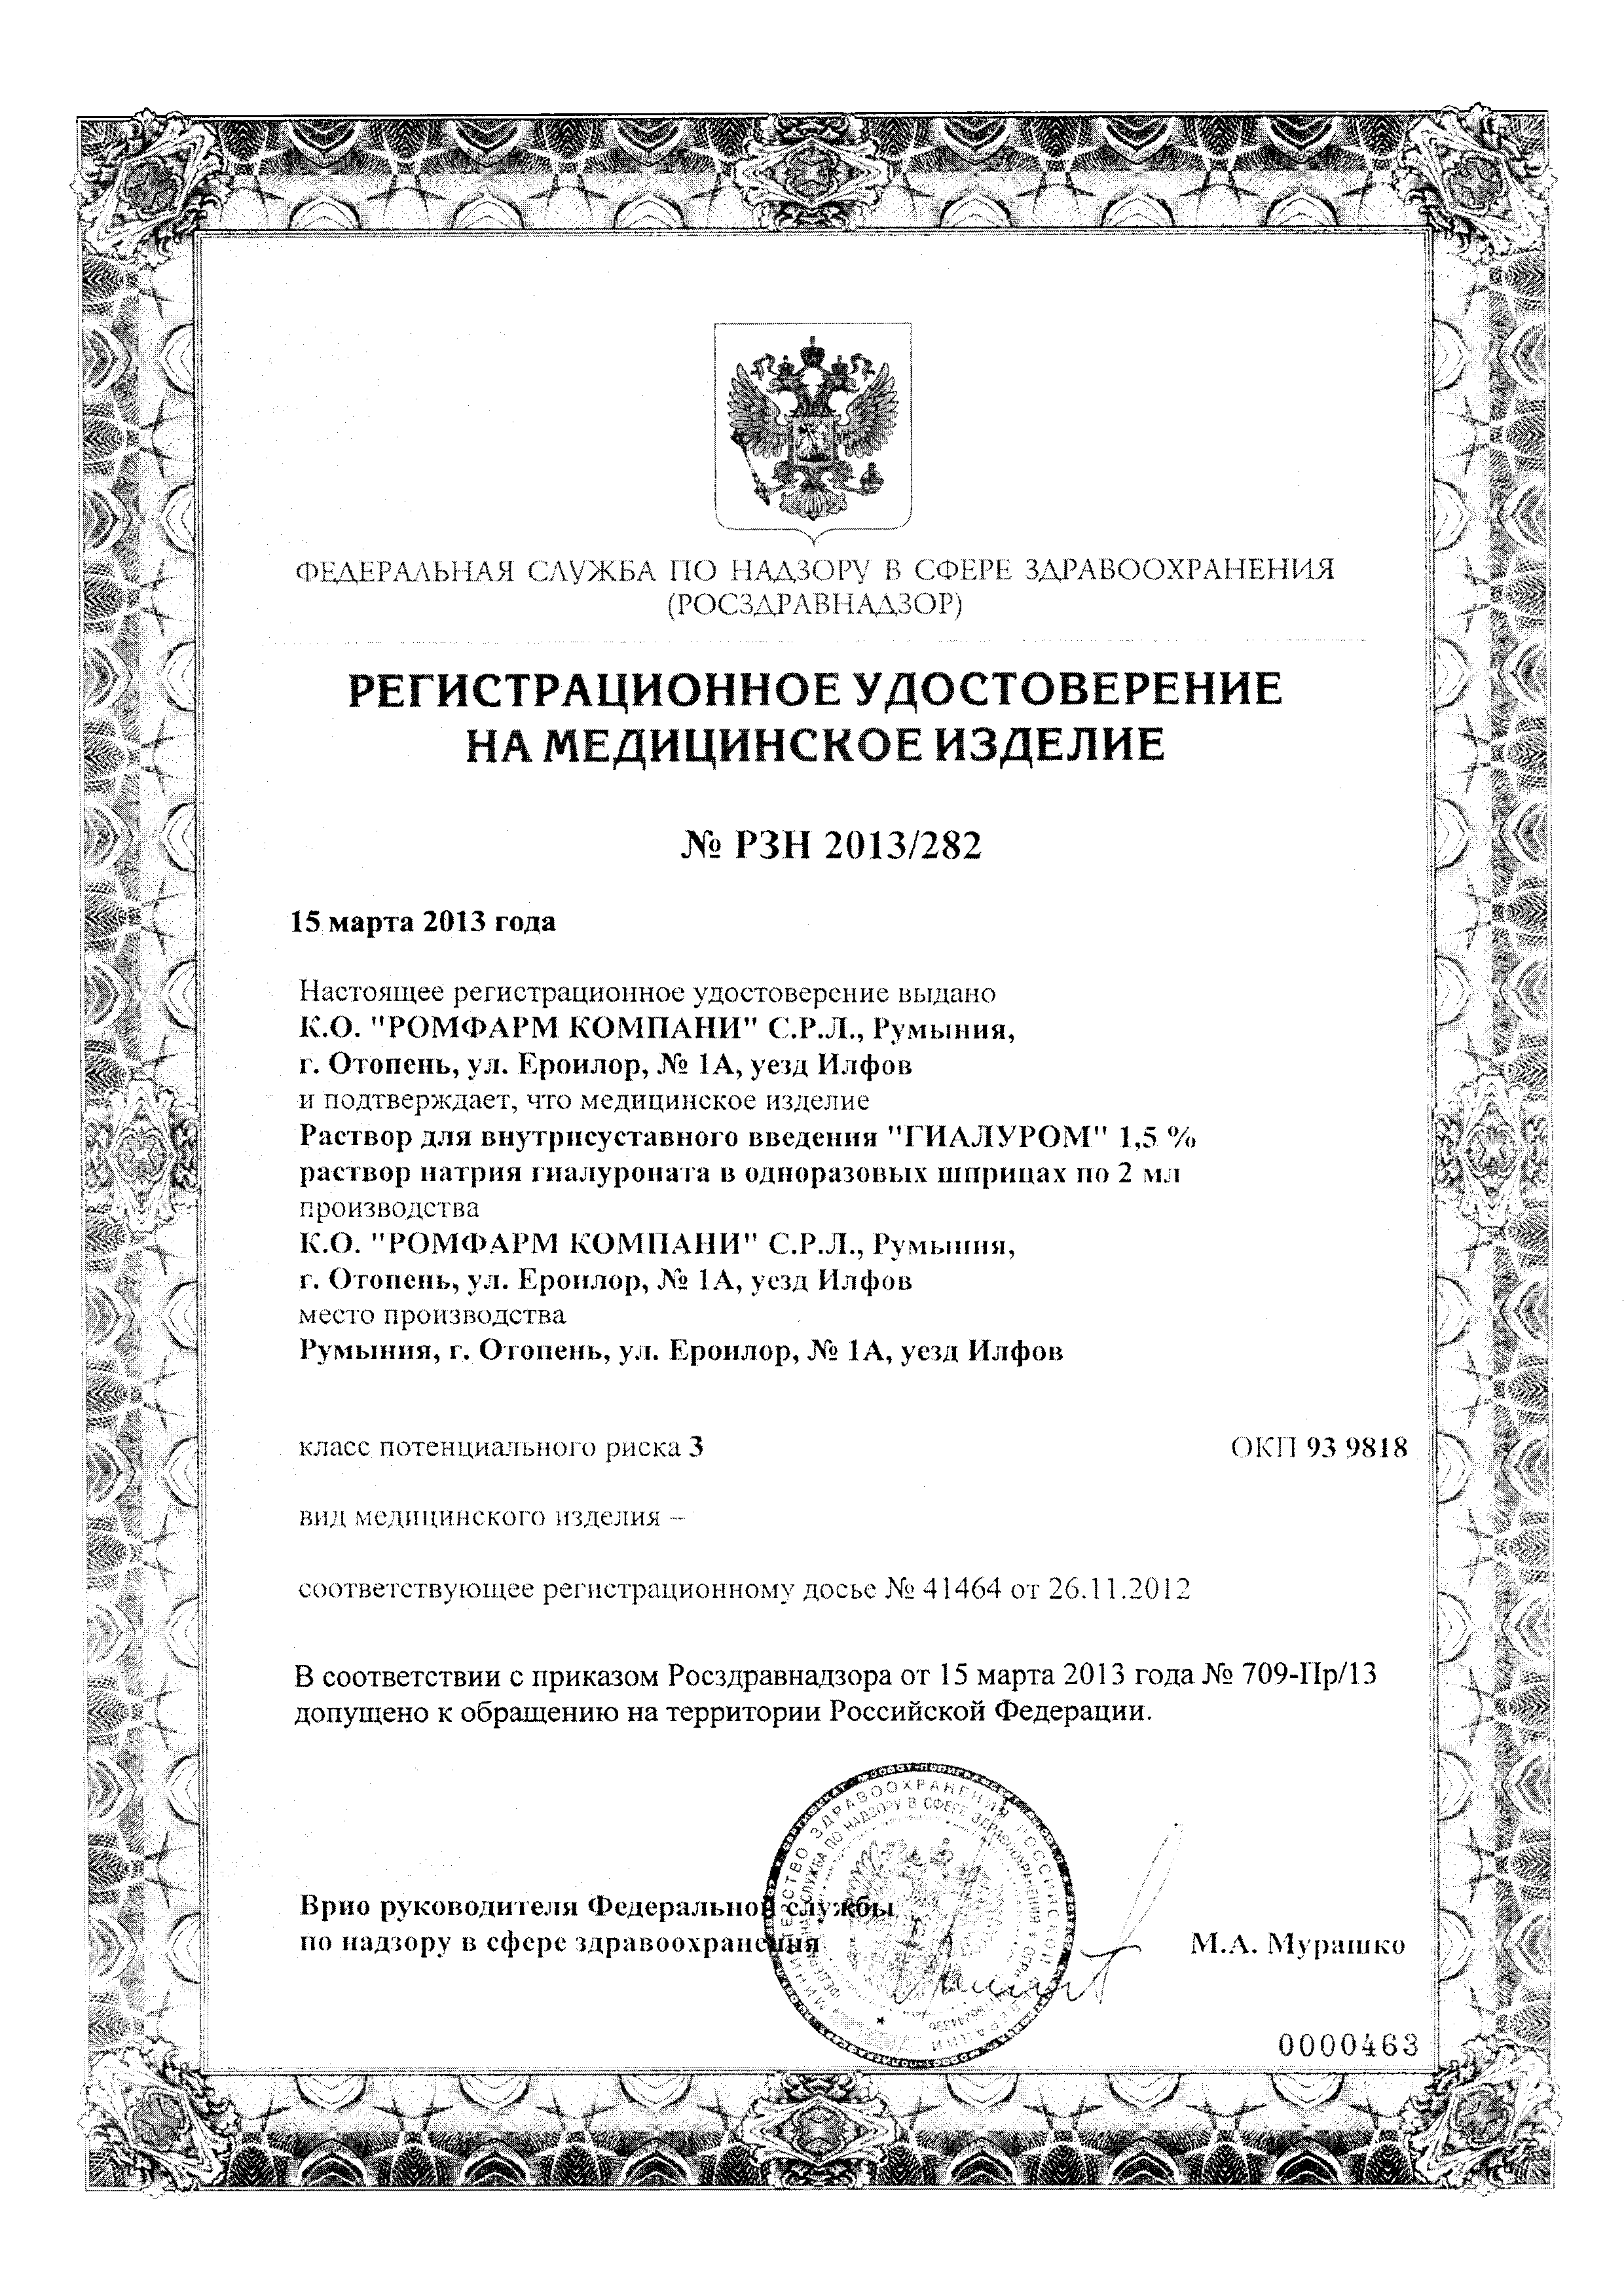 Гиалуром сертификат